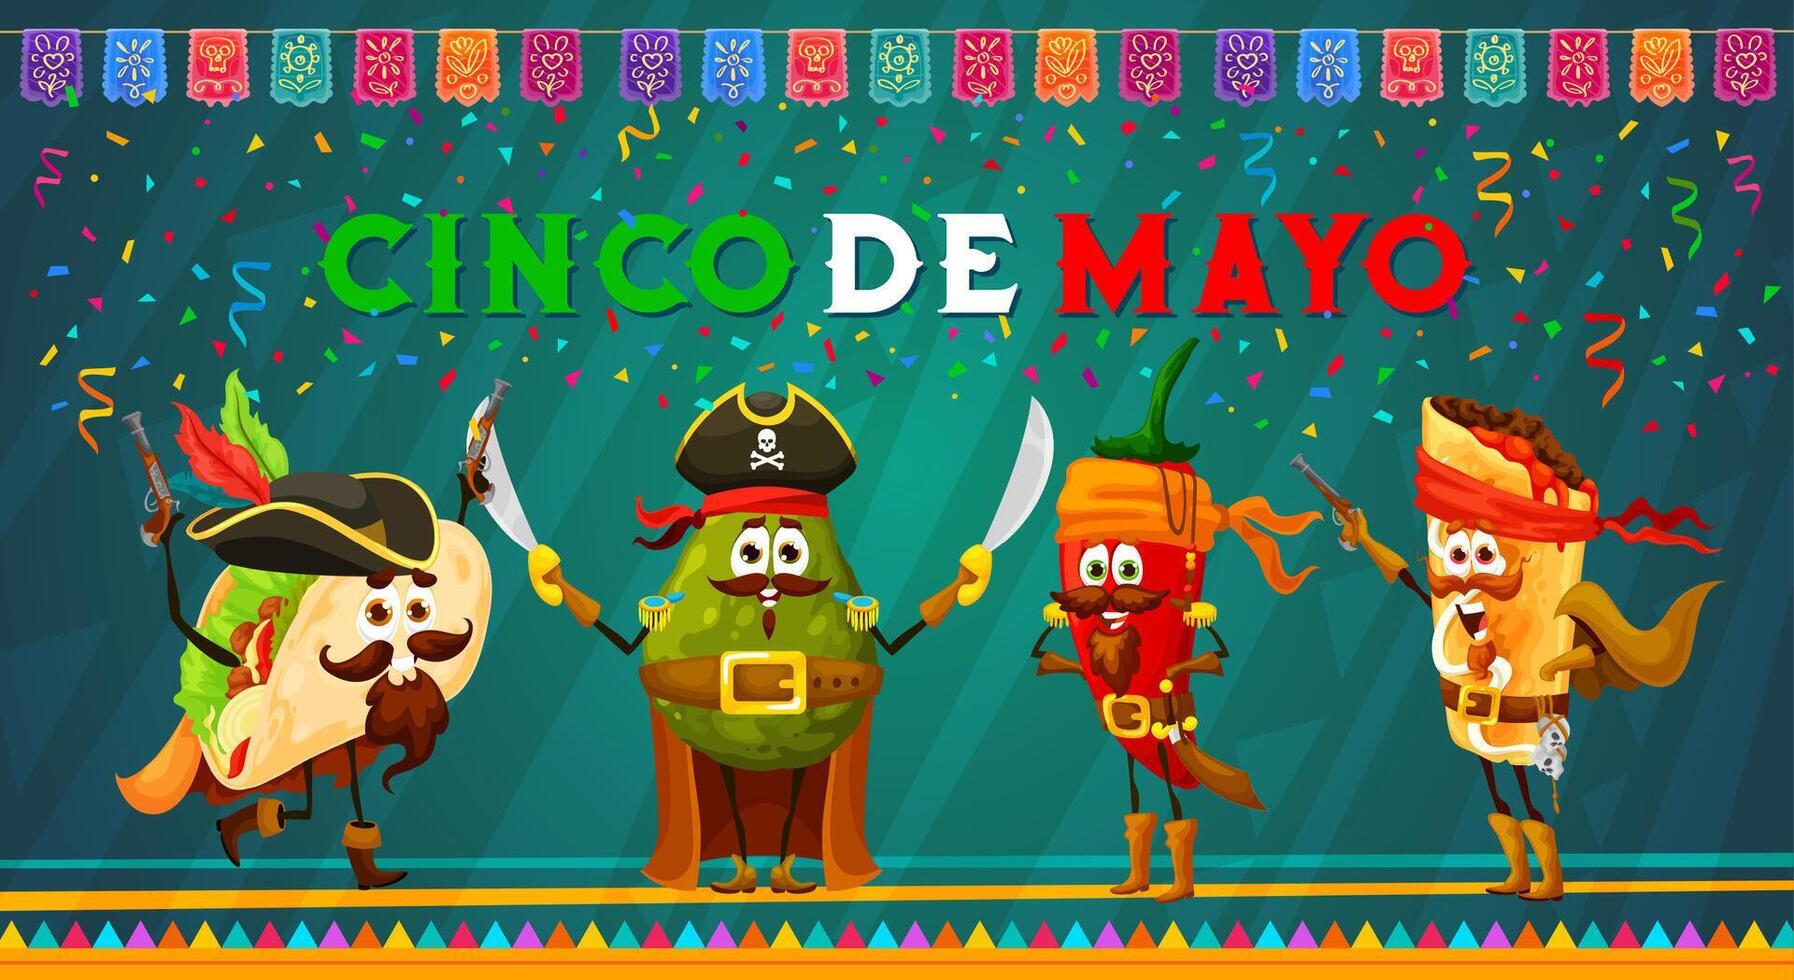 dibujos animados mexicano Texas mex piratas en cinco Delaware mayonesa vector